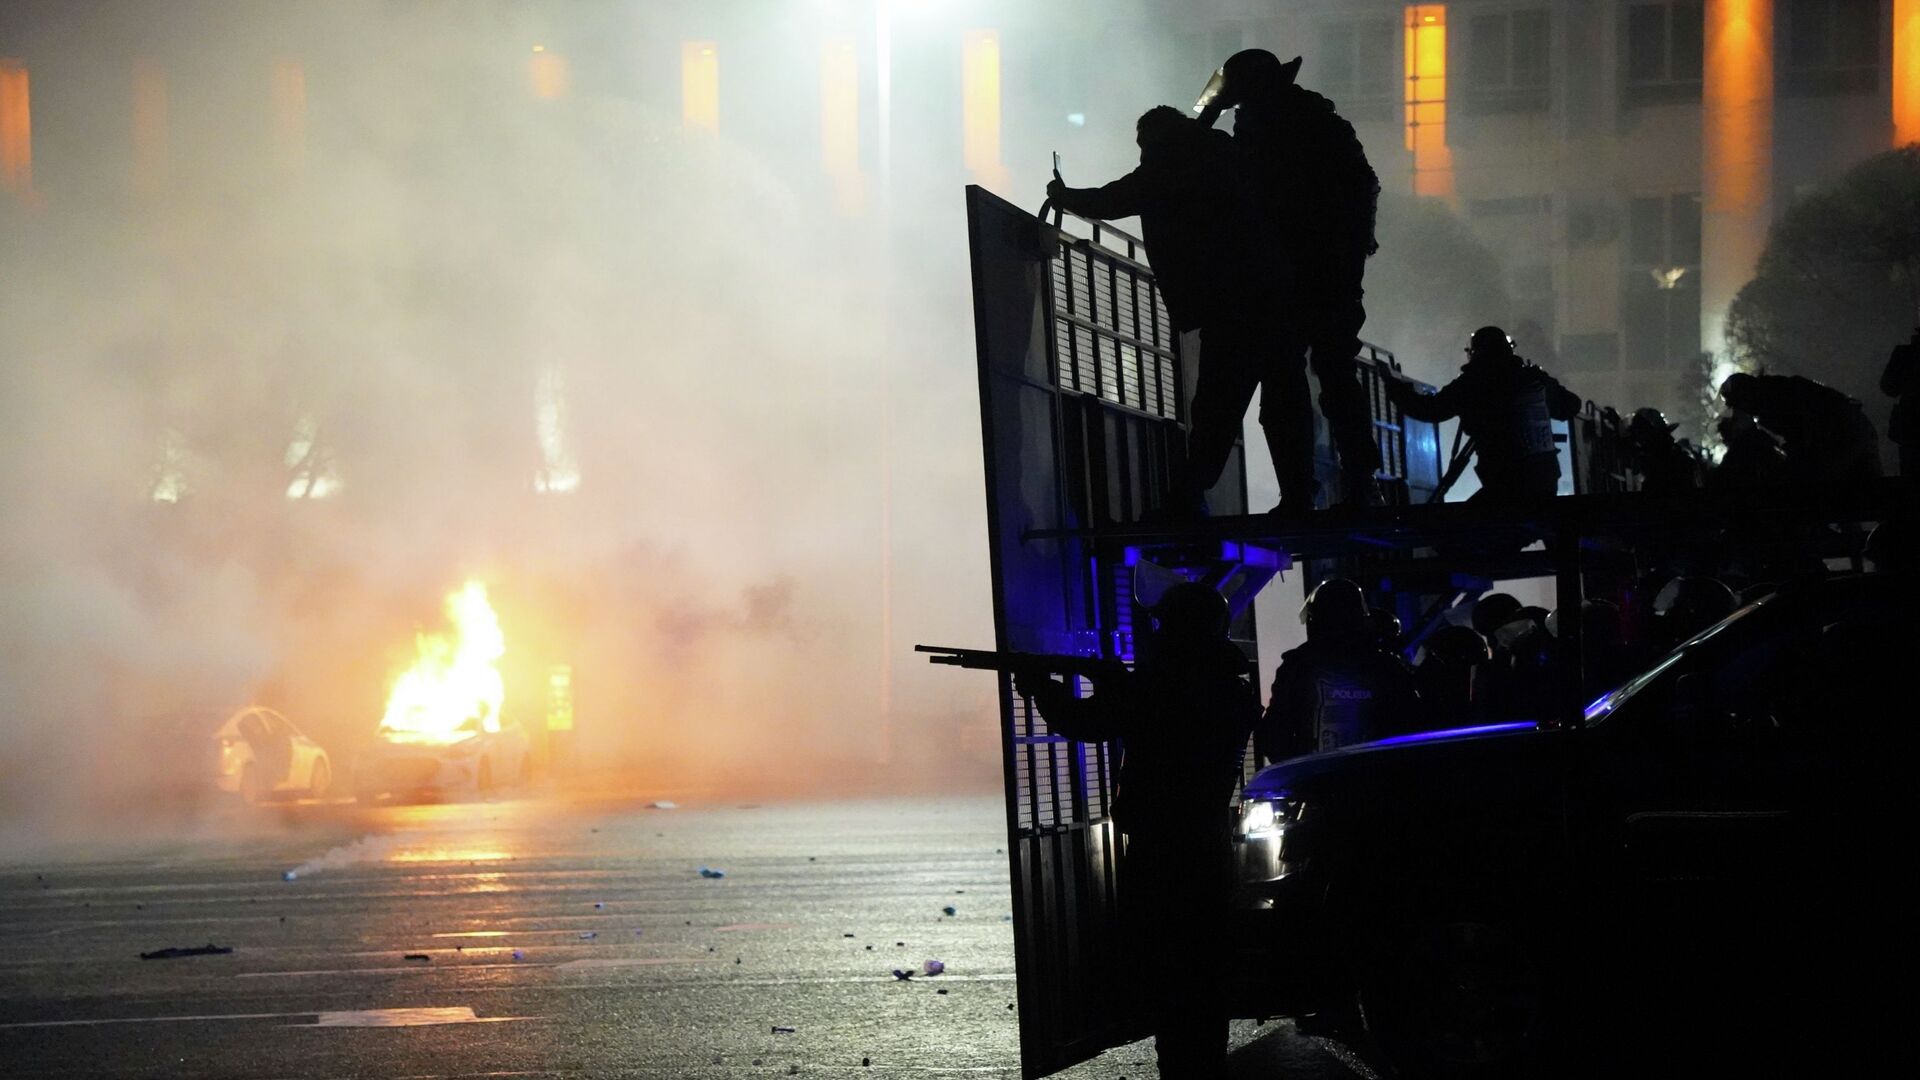 Полицейская машина горит, когда ОМОН готовится остановить демонстрантов в центре Алматы, Казахстан, среда, 5 января 2022 г.  - Sputnik Казахстан, 1920, 14.03.2022